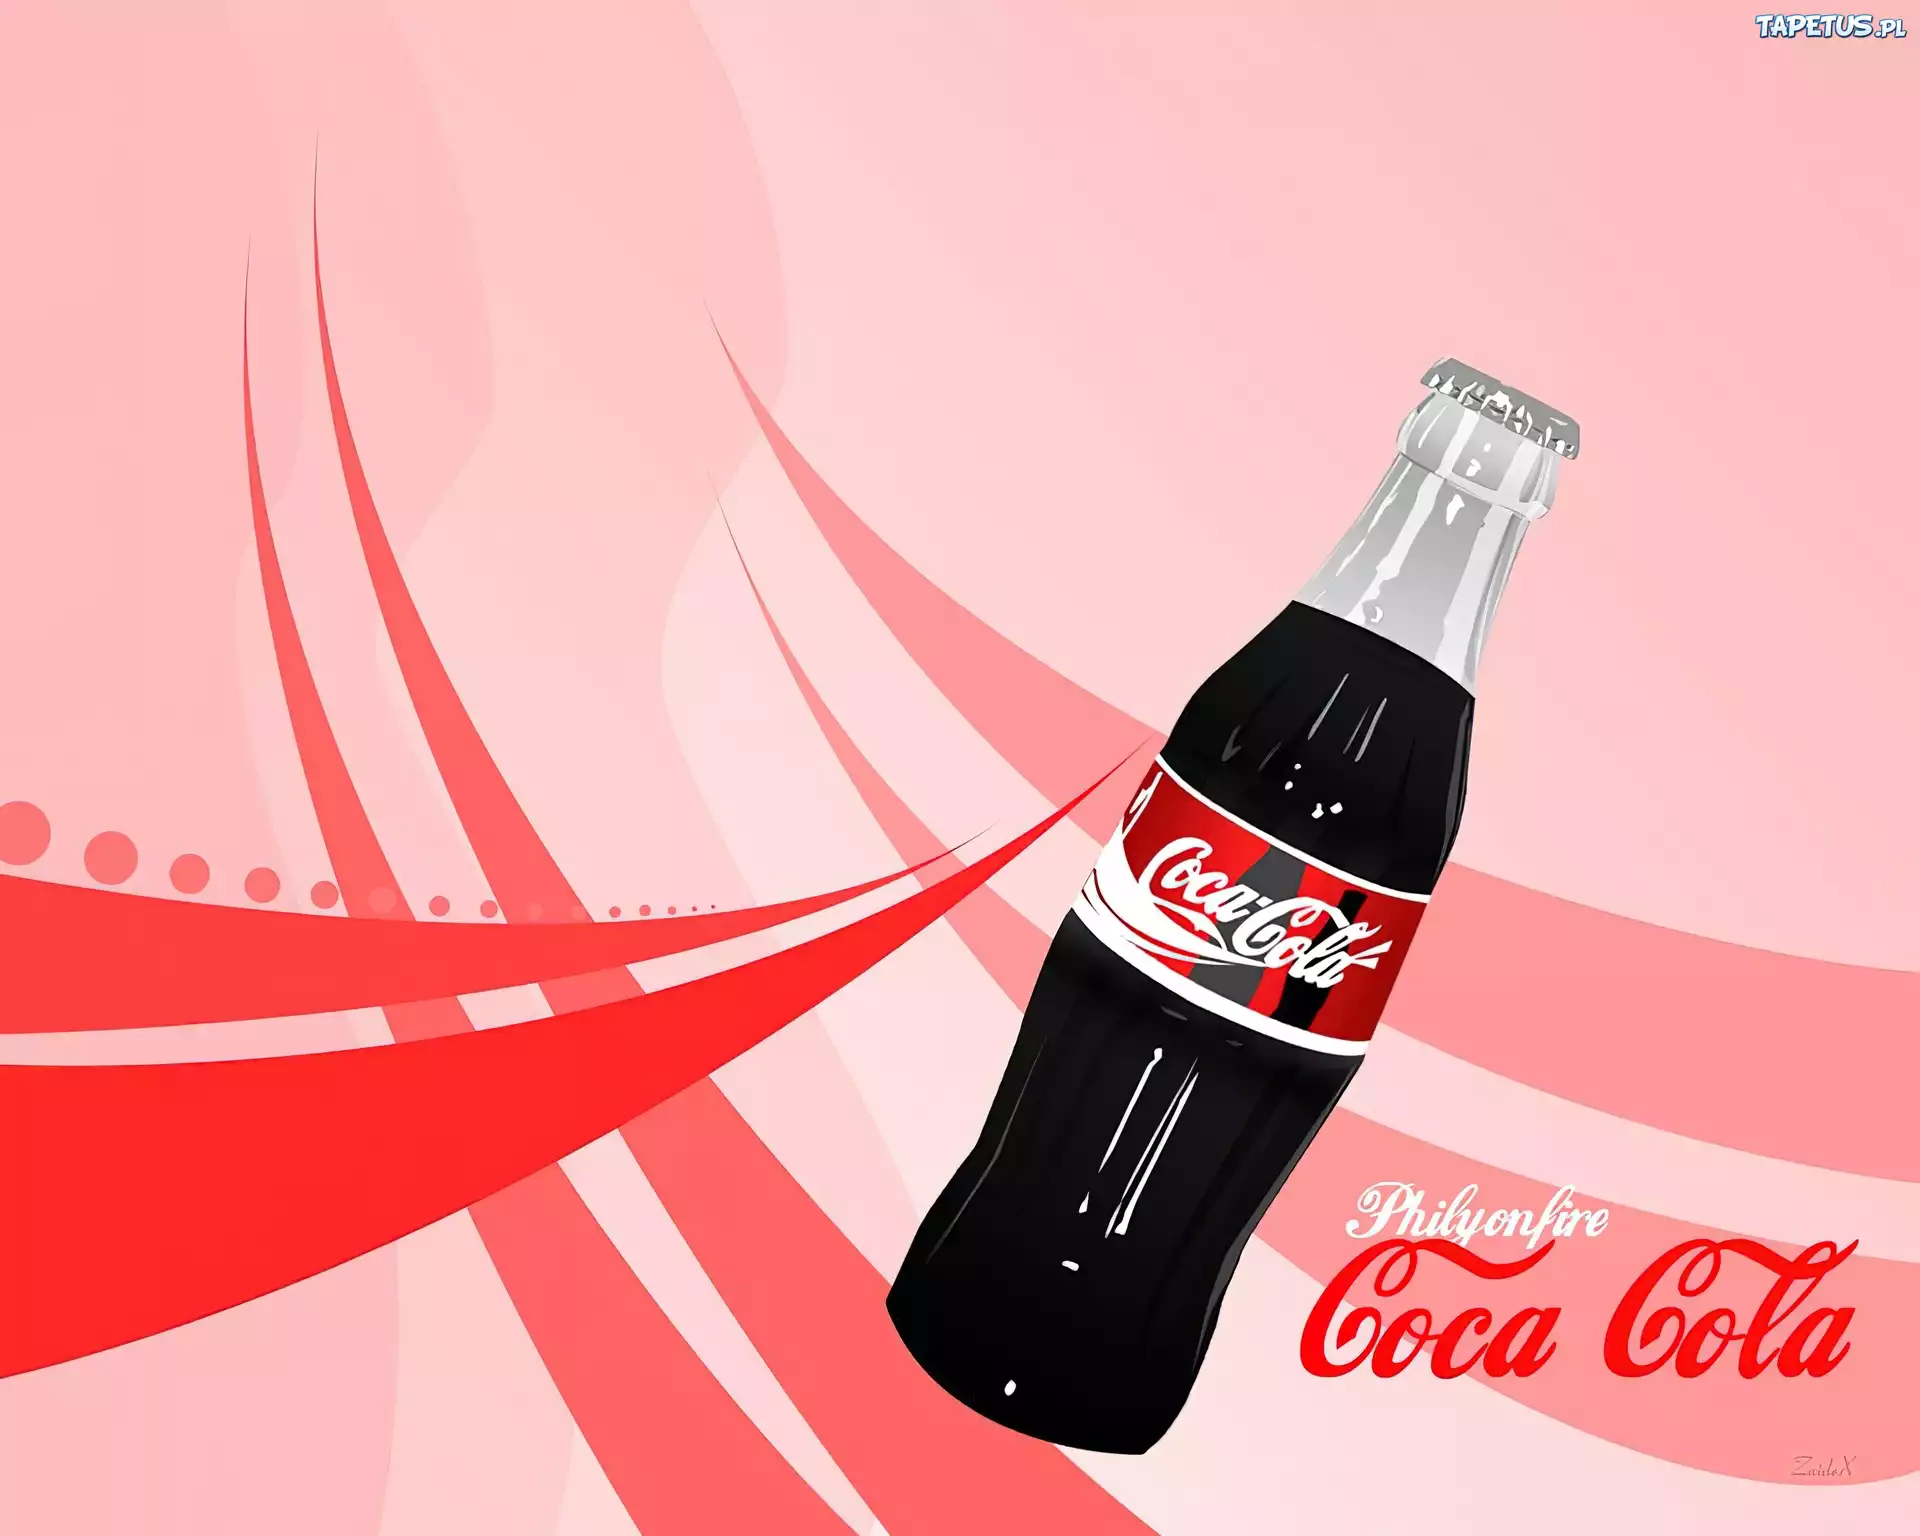 Coca-Colla Банка наушники бесплатно